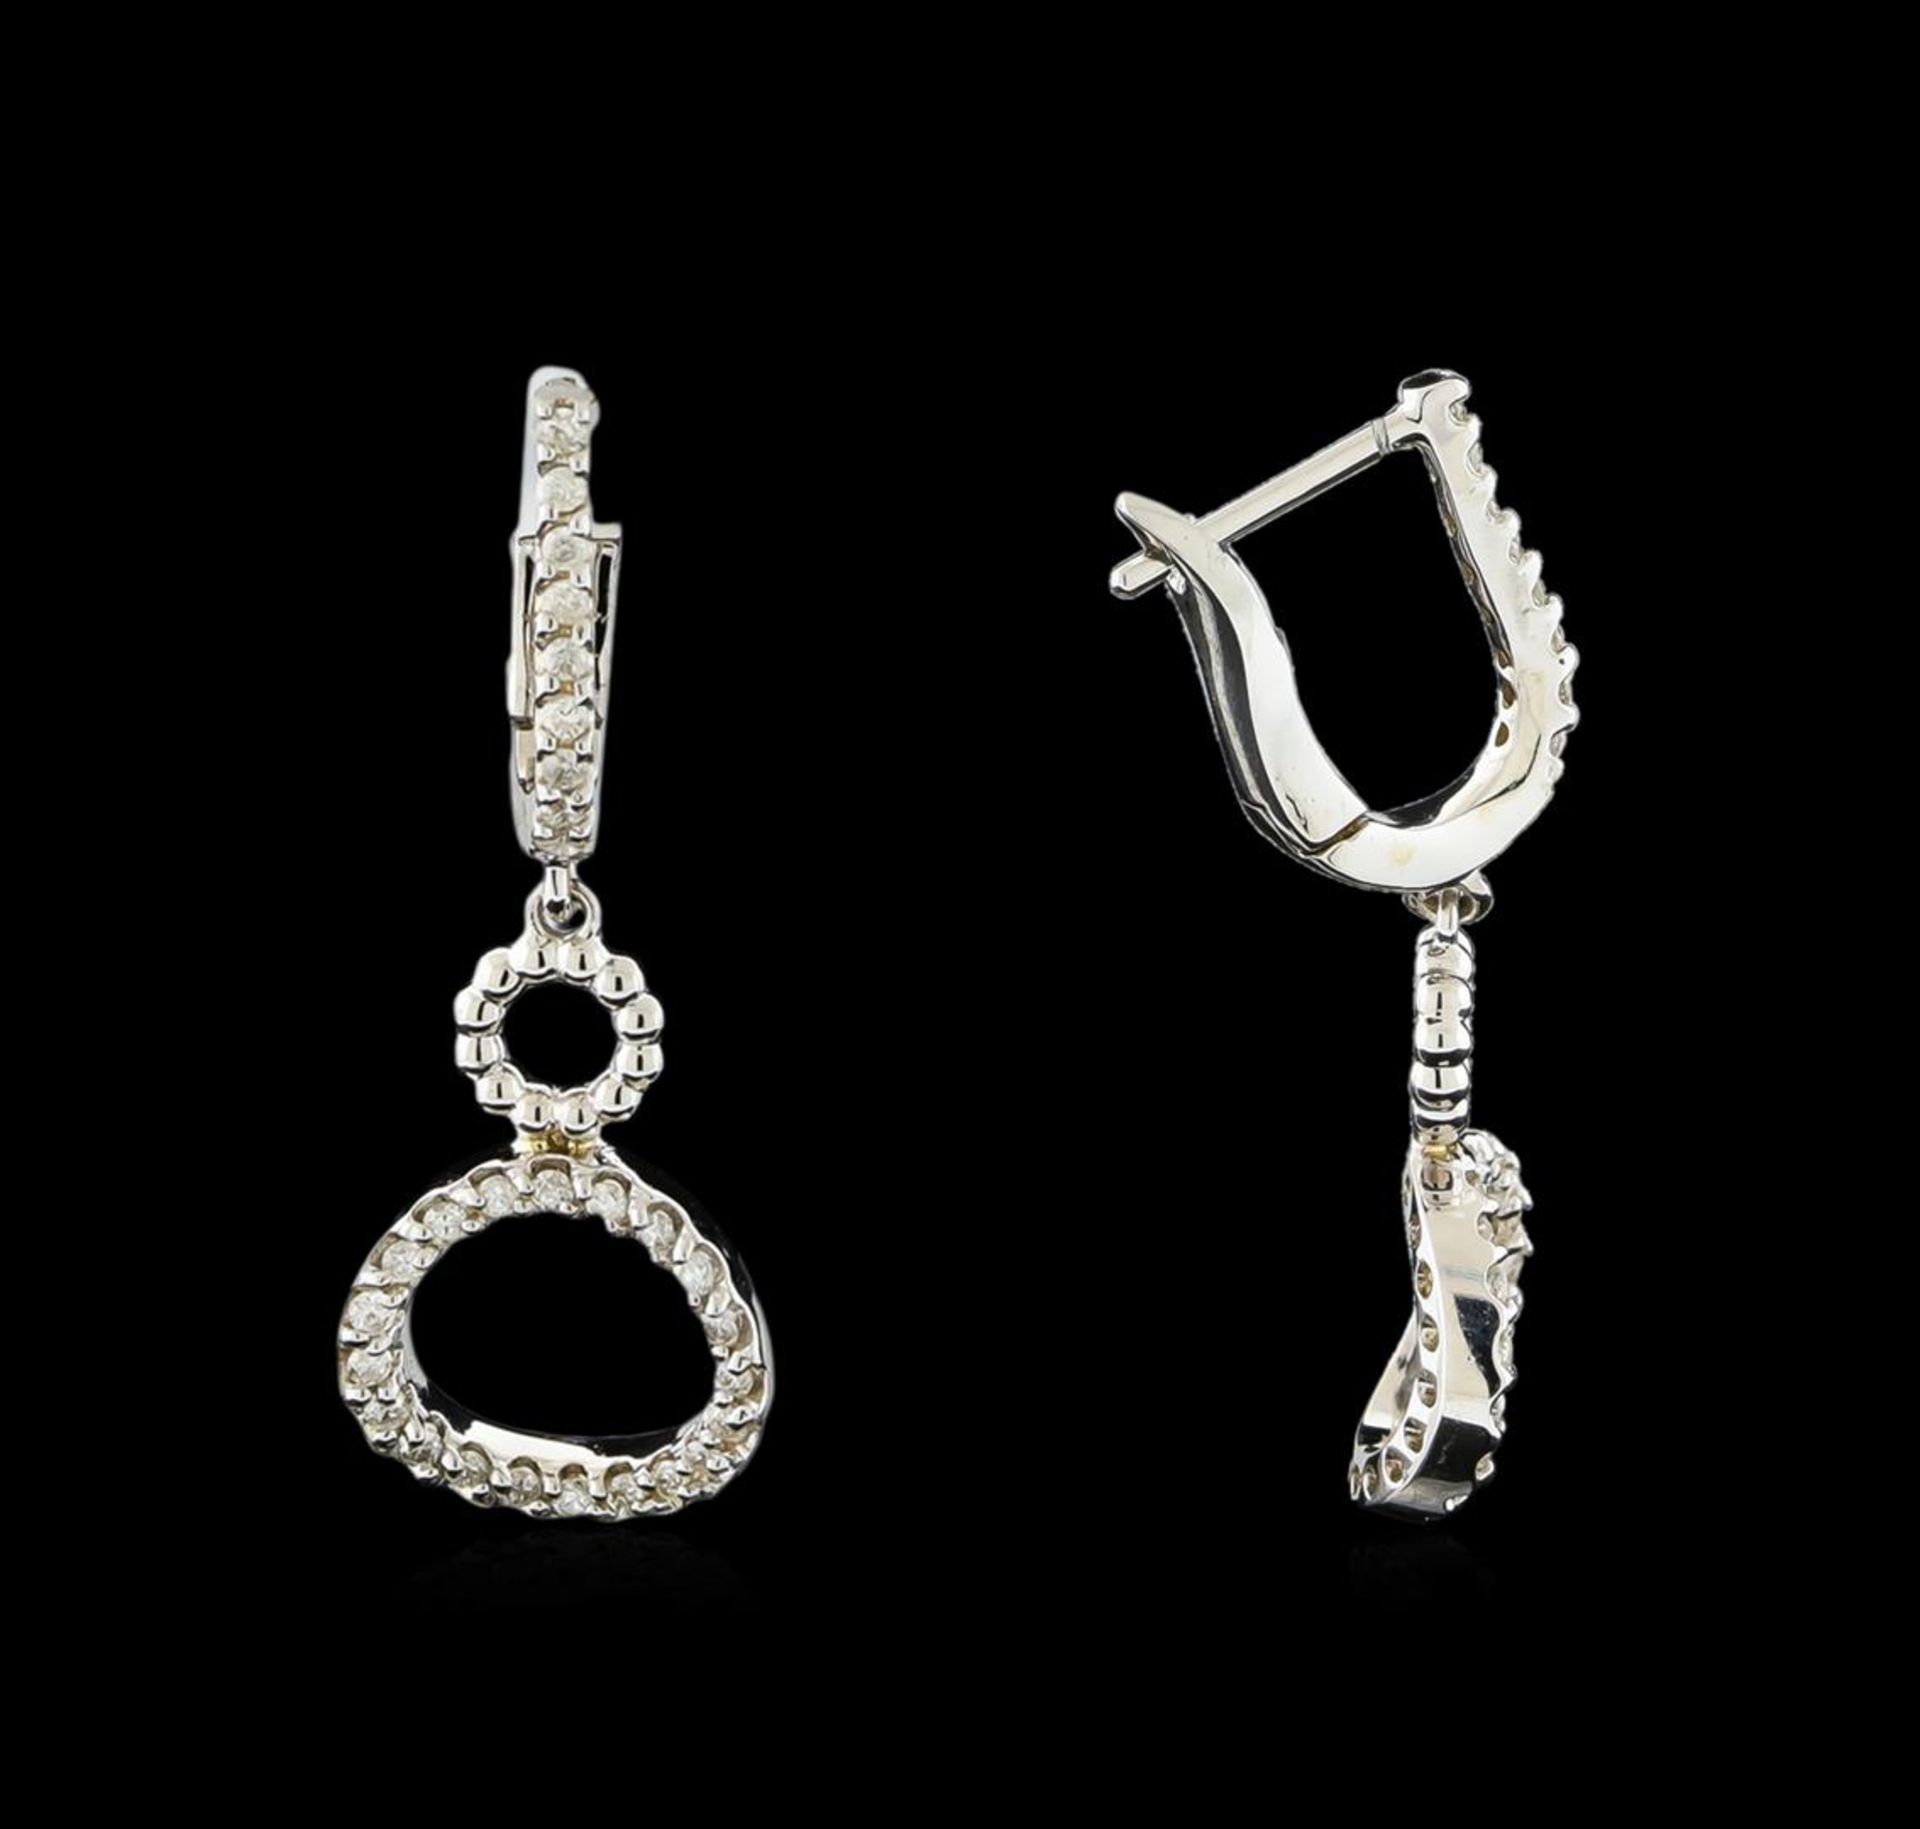 0.38 ctw Diamond Earrings - 14KT White Gold - Image 2 of 2